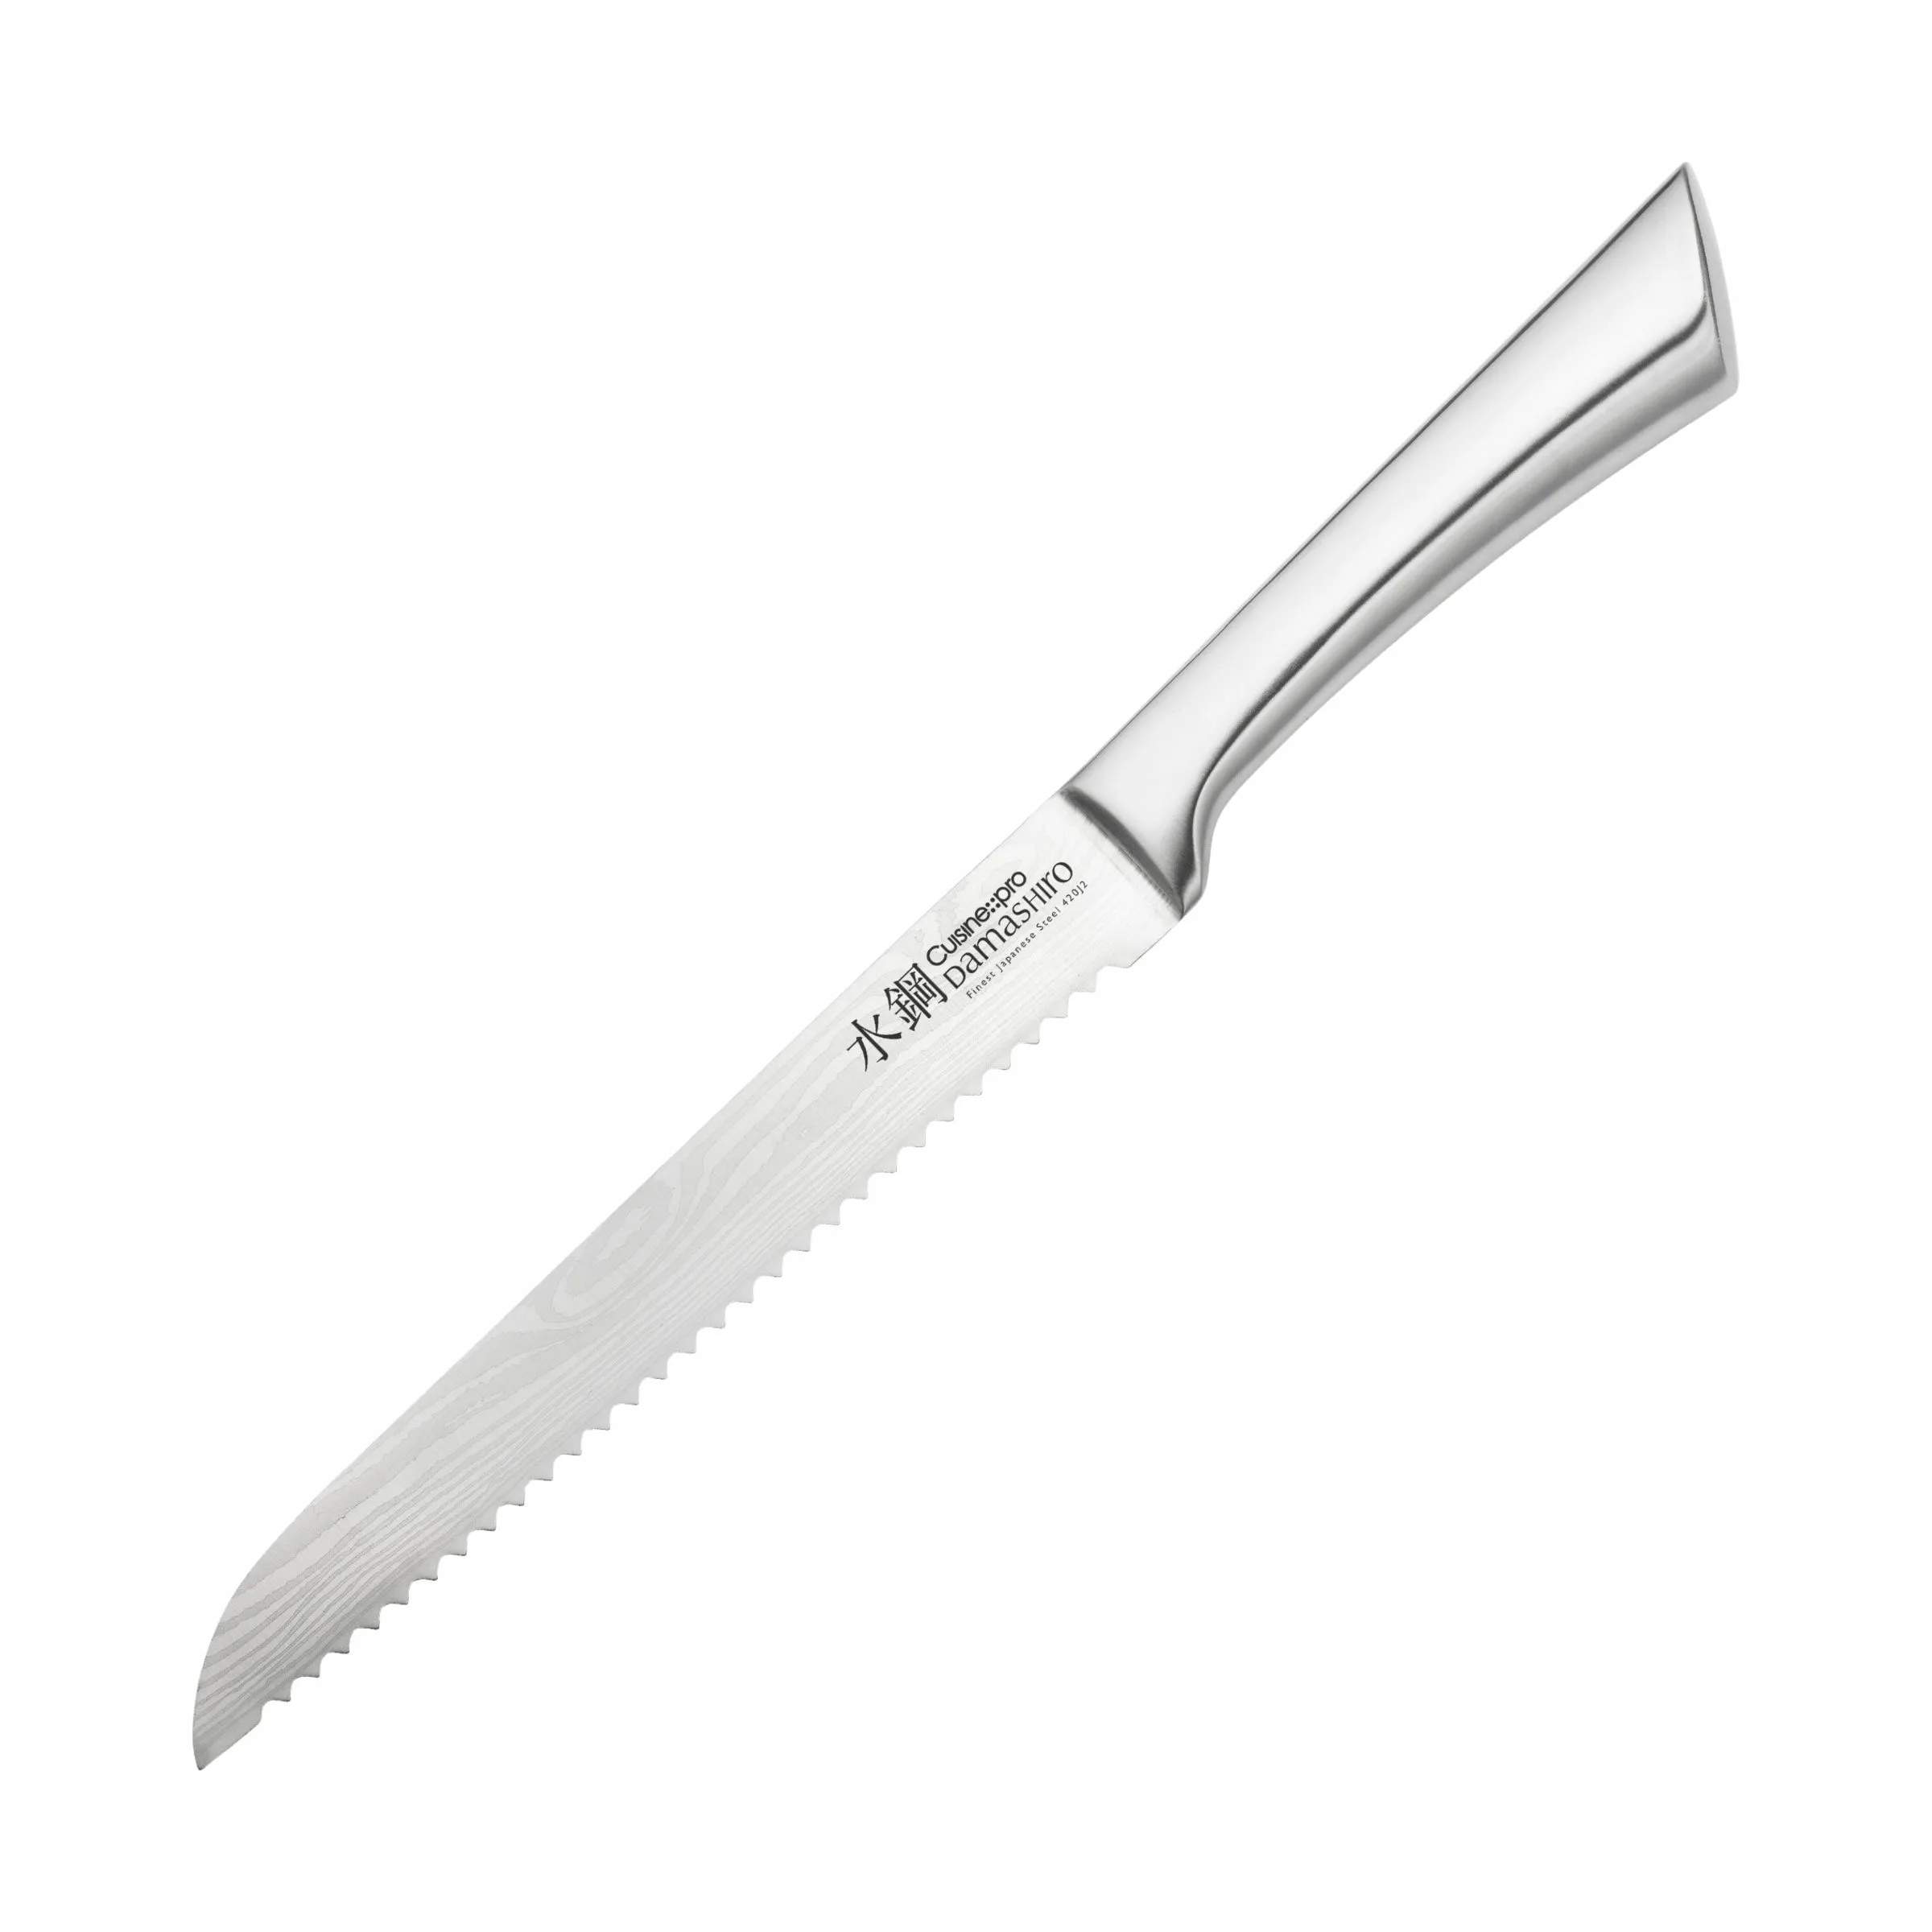 Damashiro® Brødkniv, sølv, large